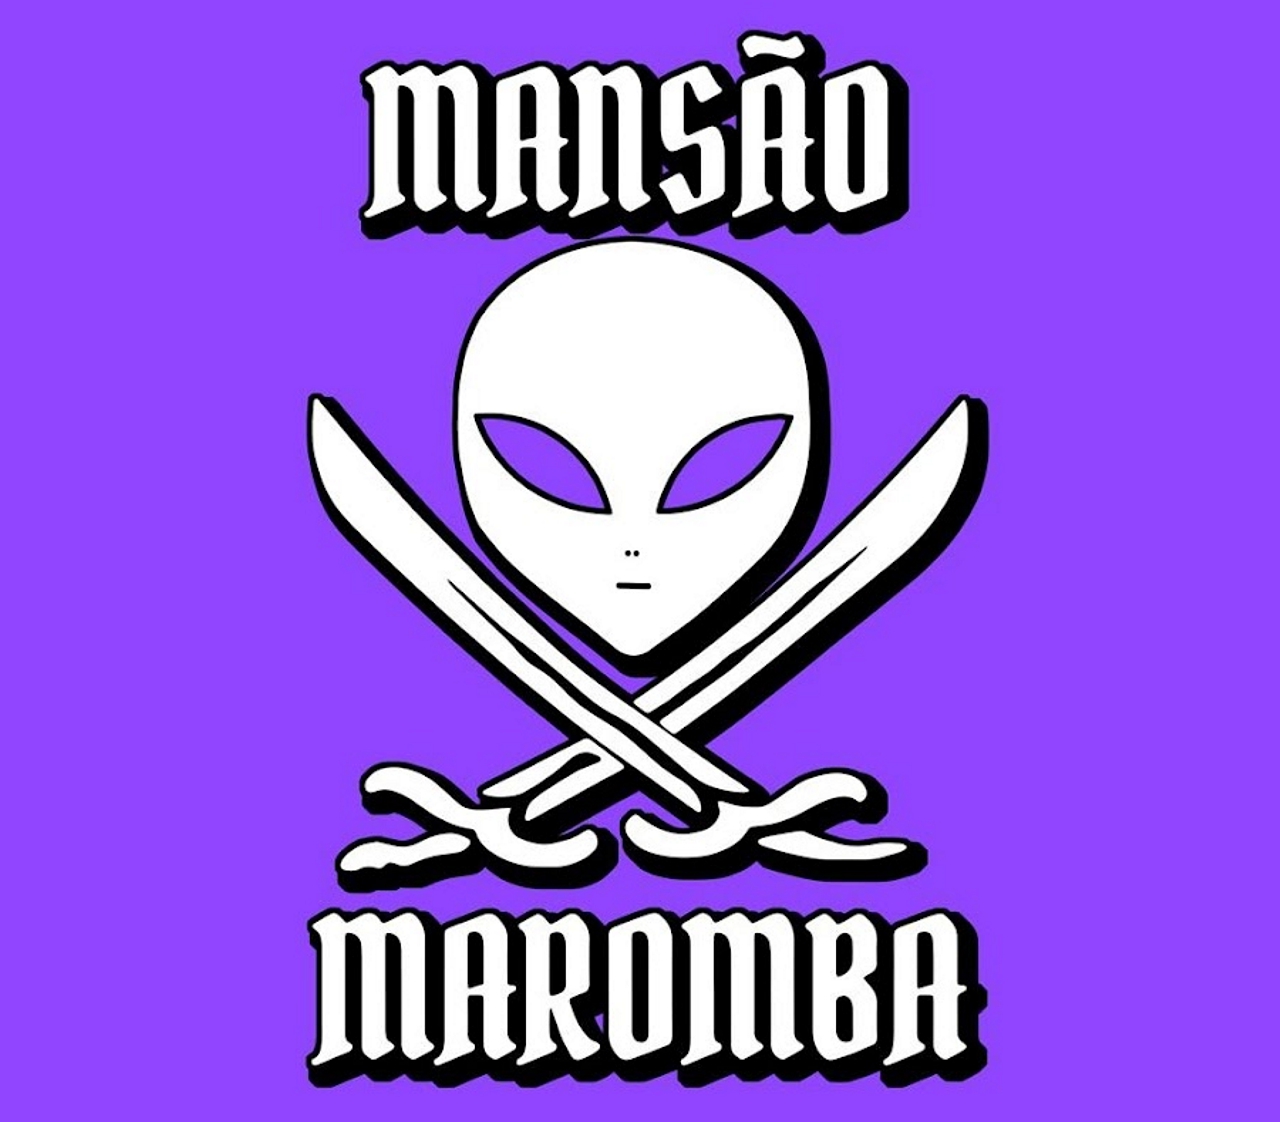 mansao-maromba De quem é a mansão Maromba? Descubra o proprietário deste impressionante imóvel